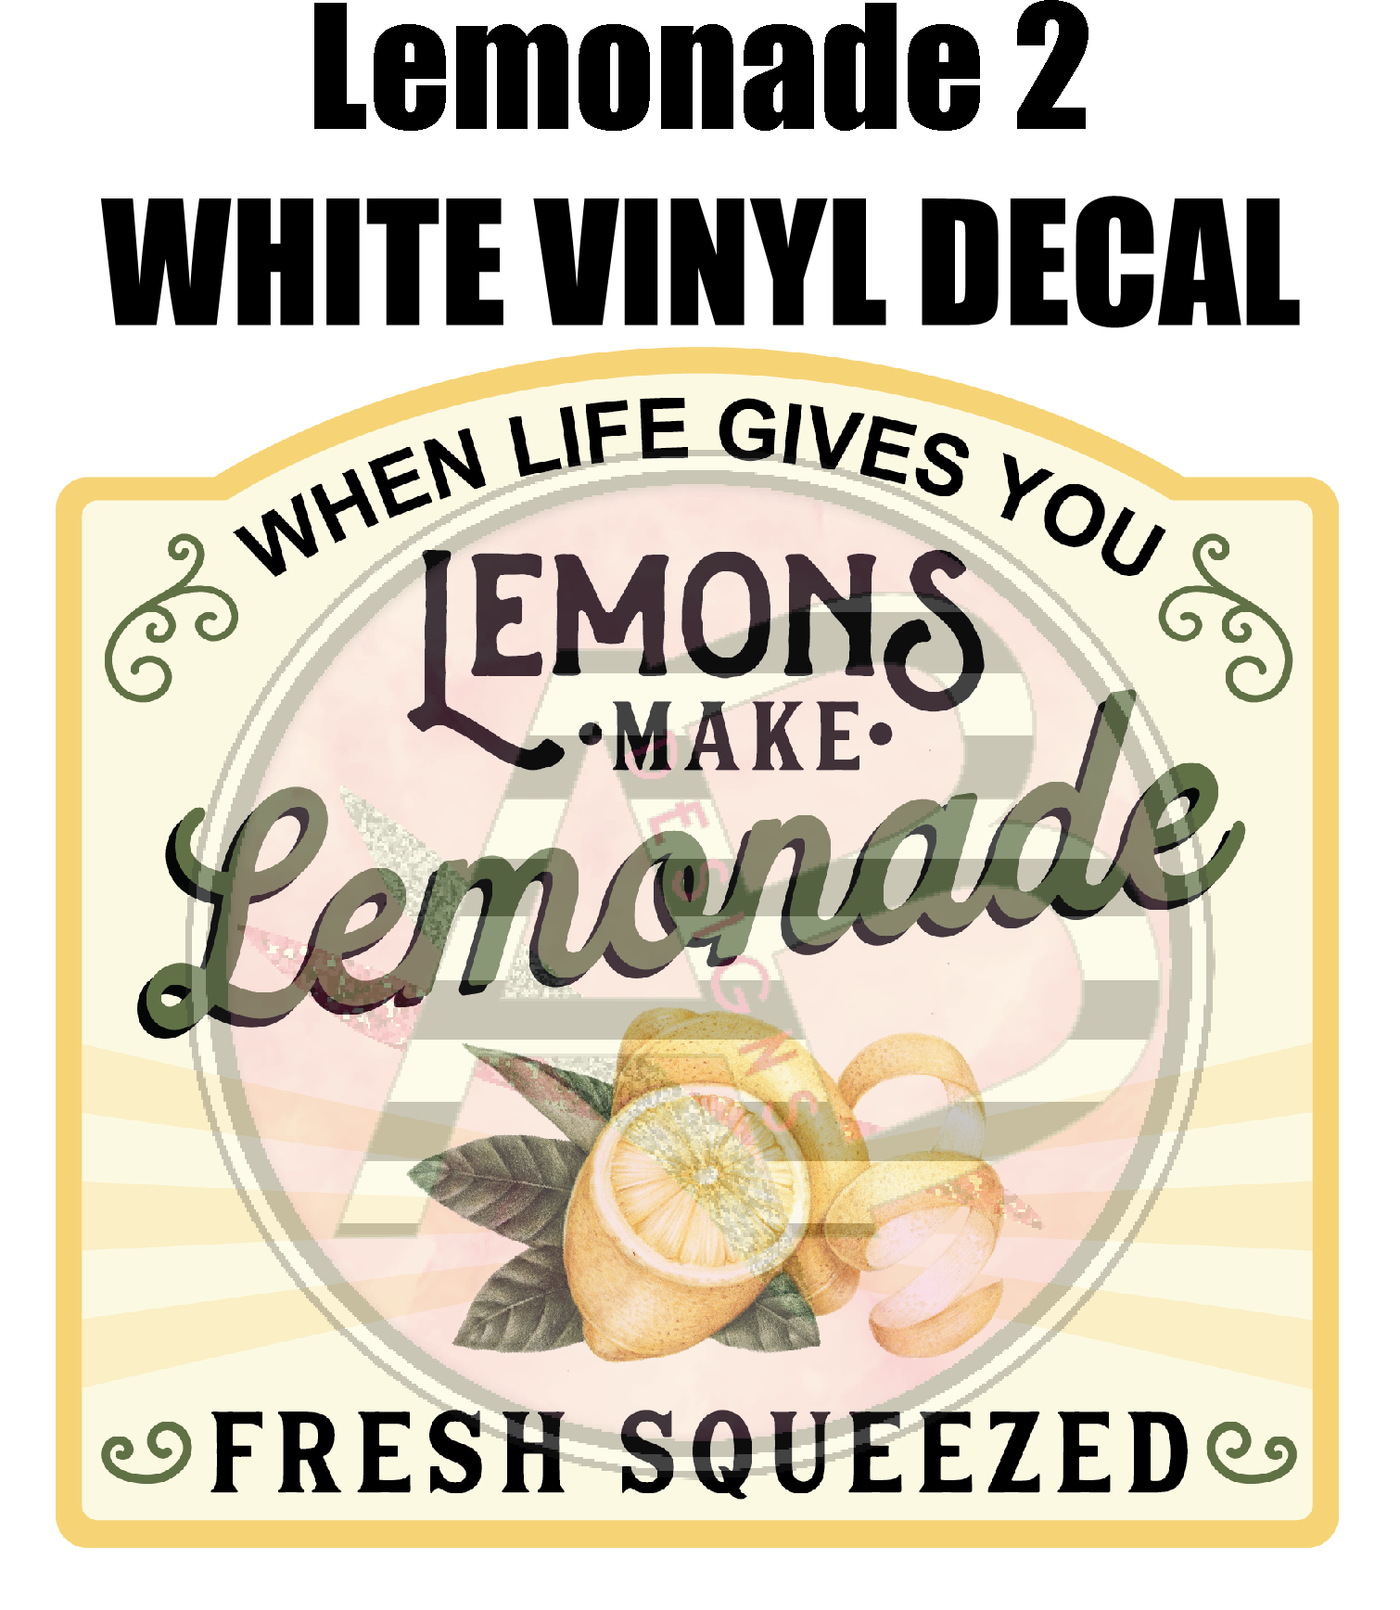 Lemonade 2 - White Vinyl Decal